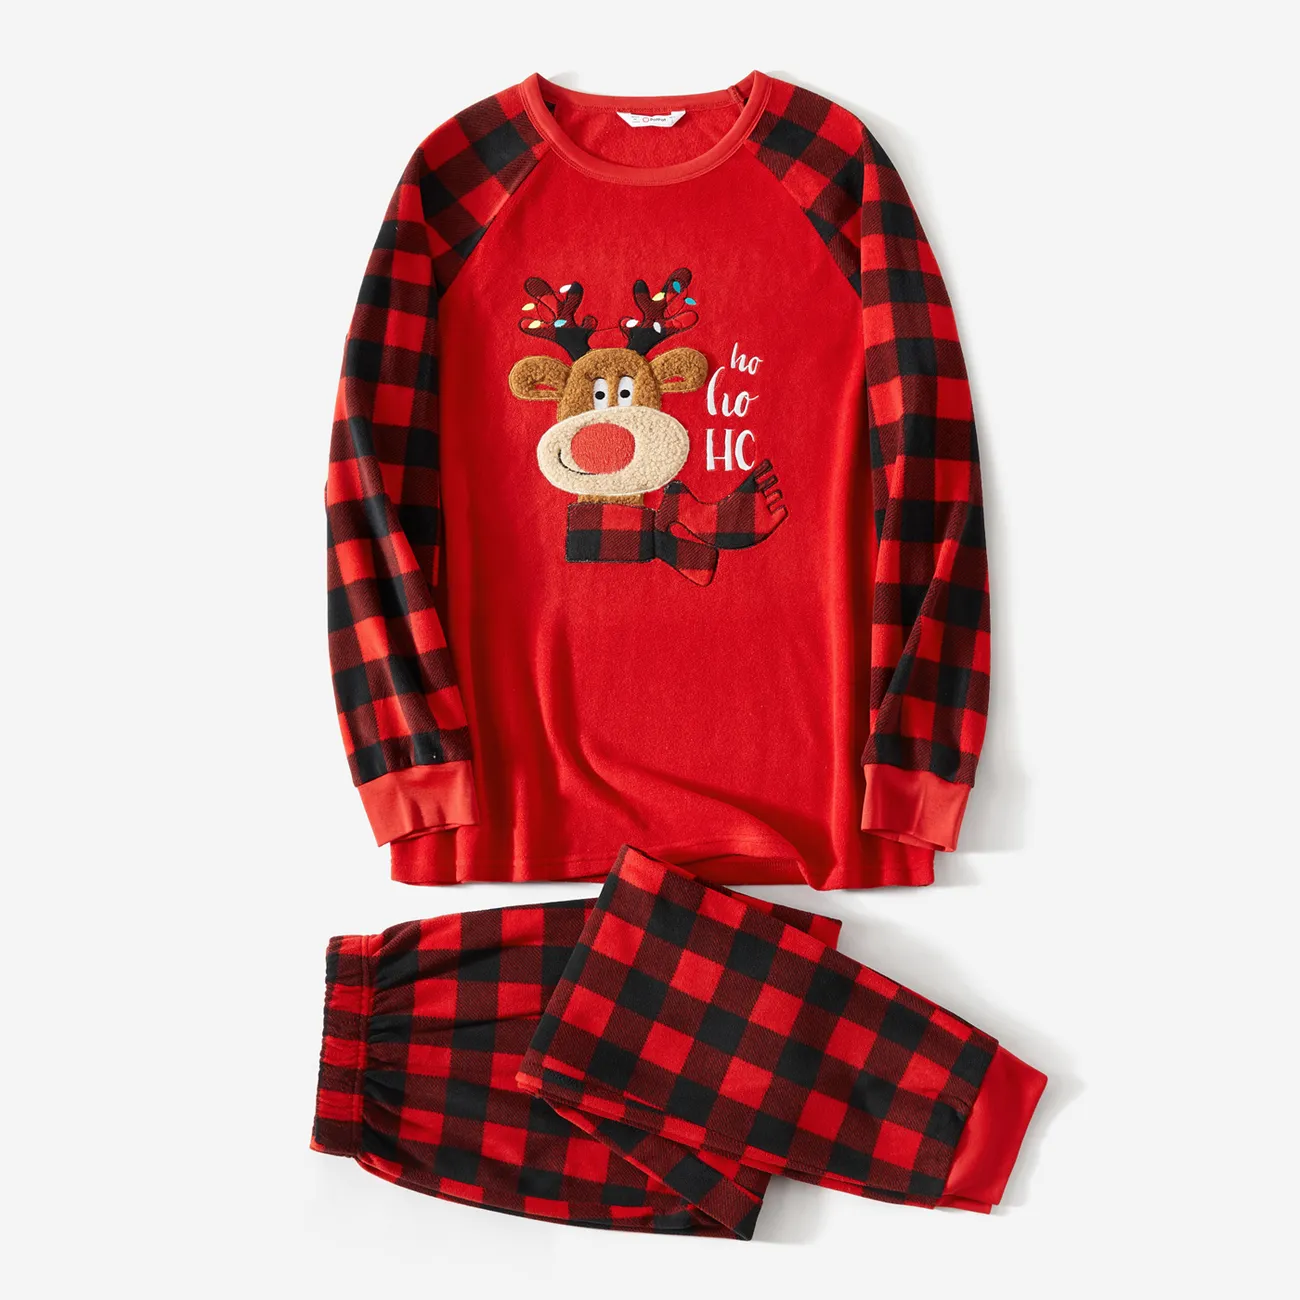 Noël Look Familial Manches longues Tenues de famille assorties Pyjamas (Flame Resistant) rouge noir big image 1